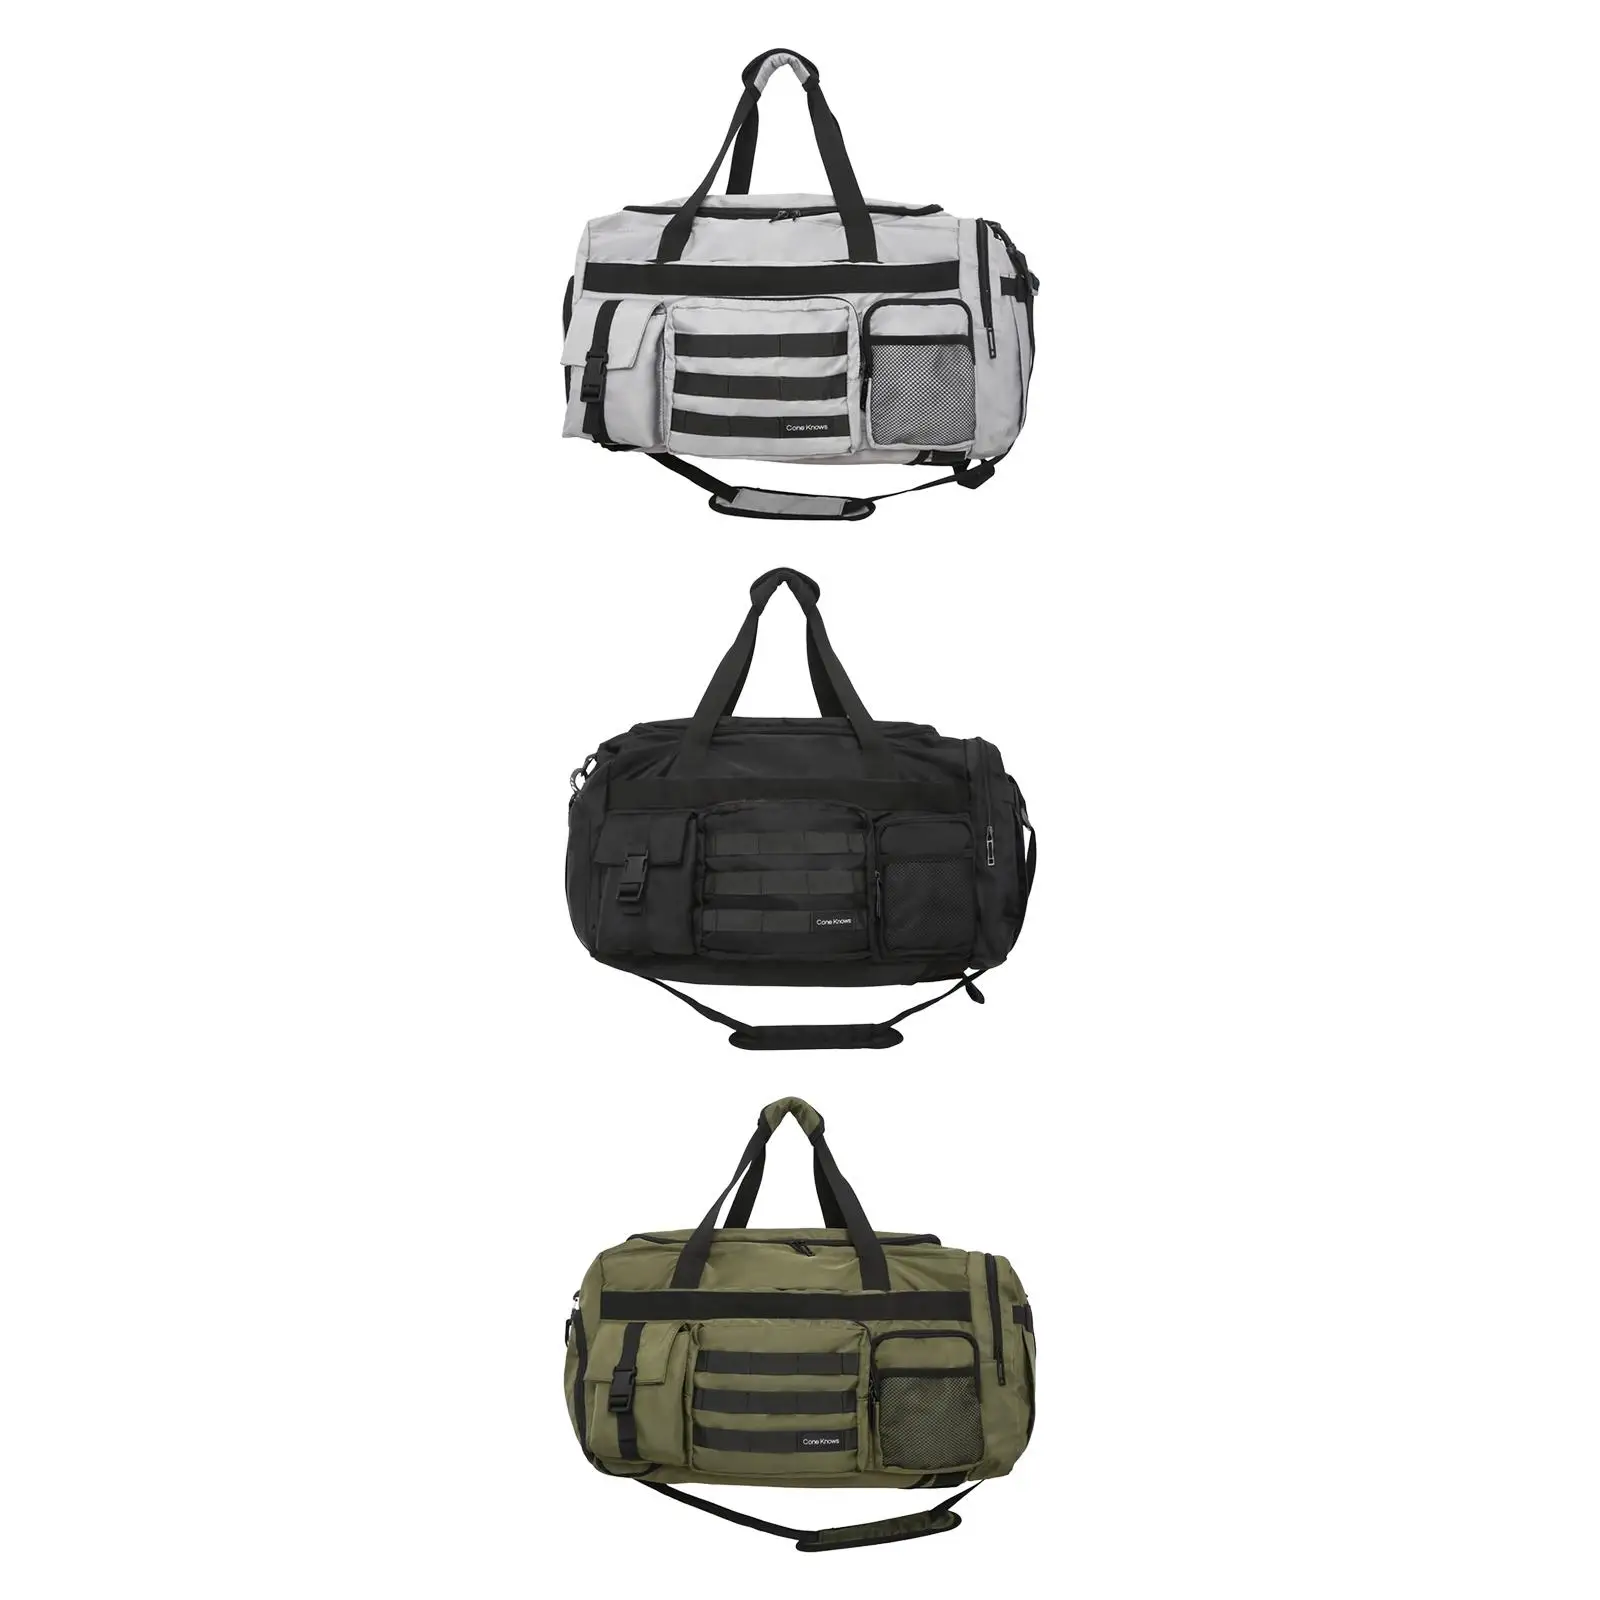 Travel Duffle Backpack Sports Gym Bag Weekender Bag Yoga Bag Apparel Portable Shoulder Bag for Fitness Weekend Exercise Camping